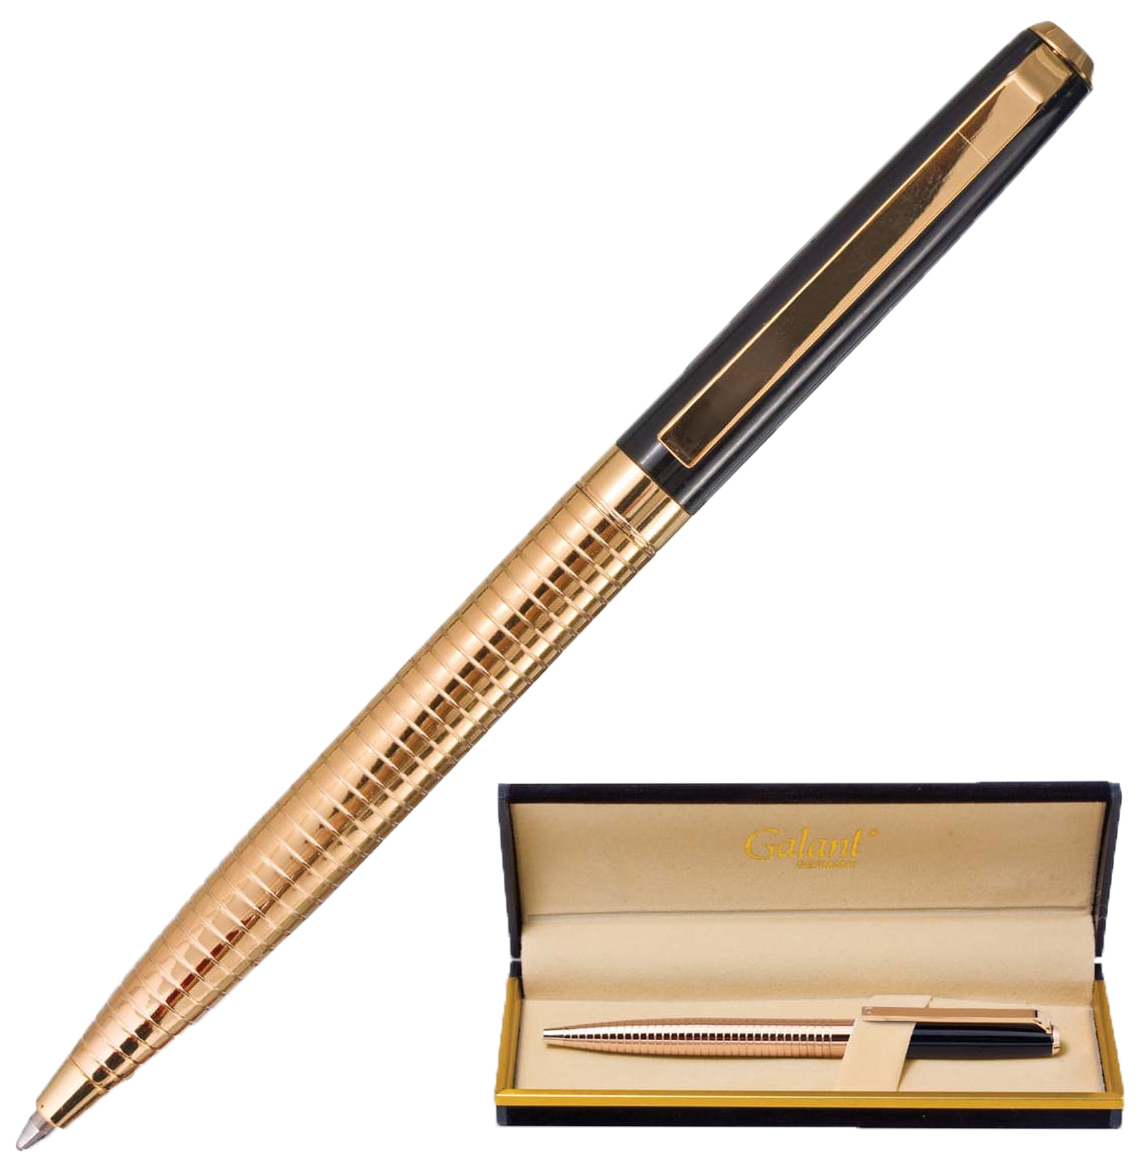 Подарочная шариковая ручка с гравировкой Galant Black Melbourne 141356 Золотистый/Чер